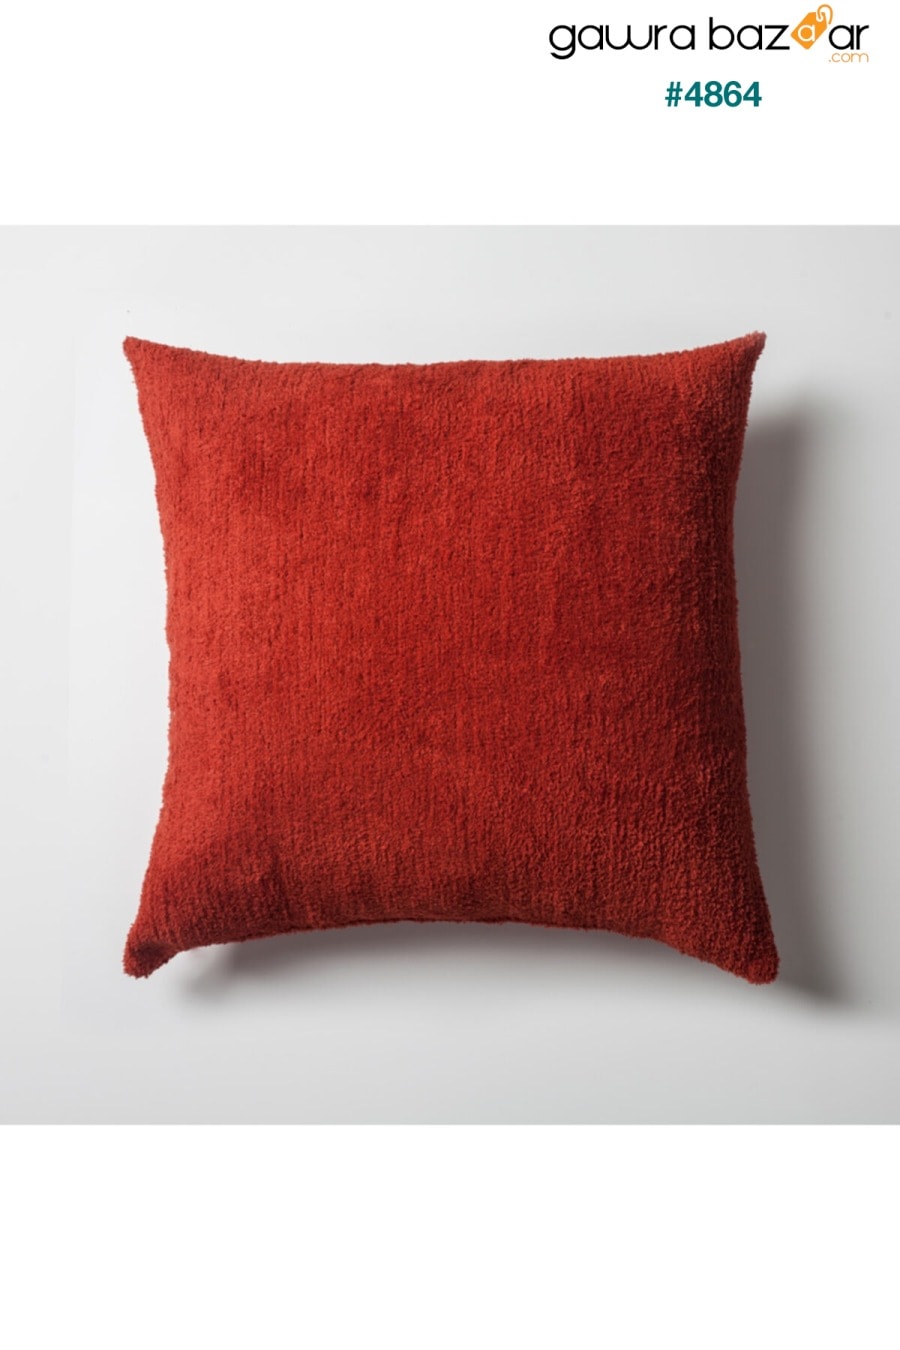 &quot;تاسوس&quot; - وسادة ديكور - مجموعة حمراء مكونة من 4 قطع (تشمل وسادة داخلية) Fineroom Living 1